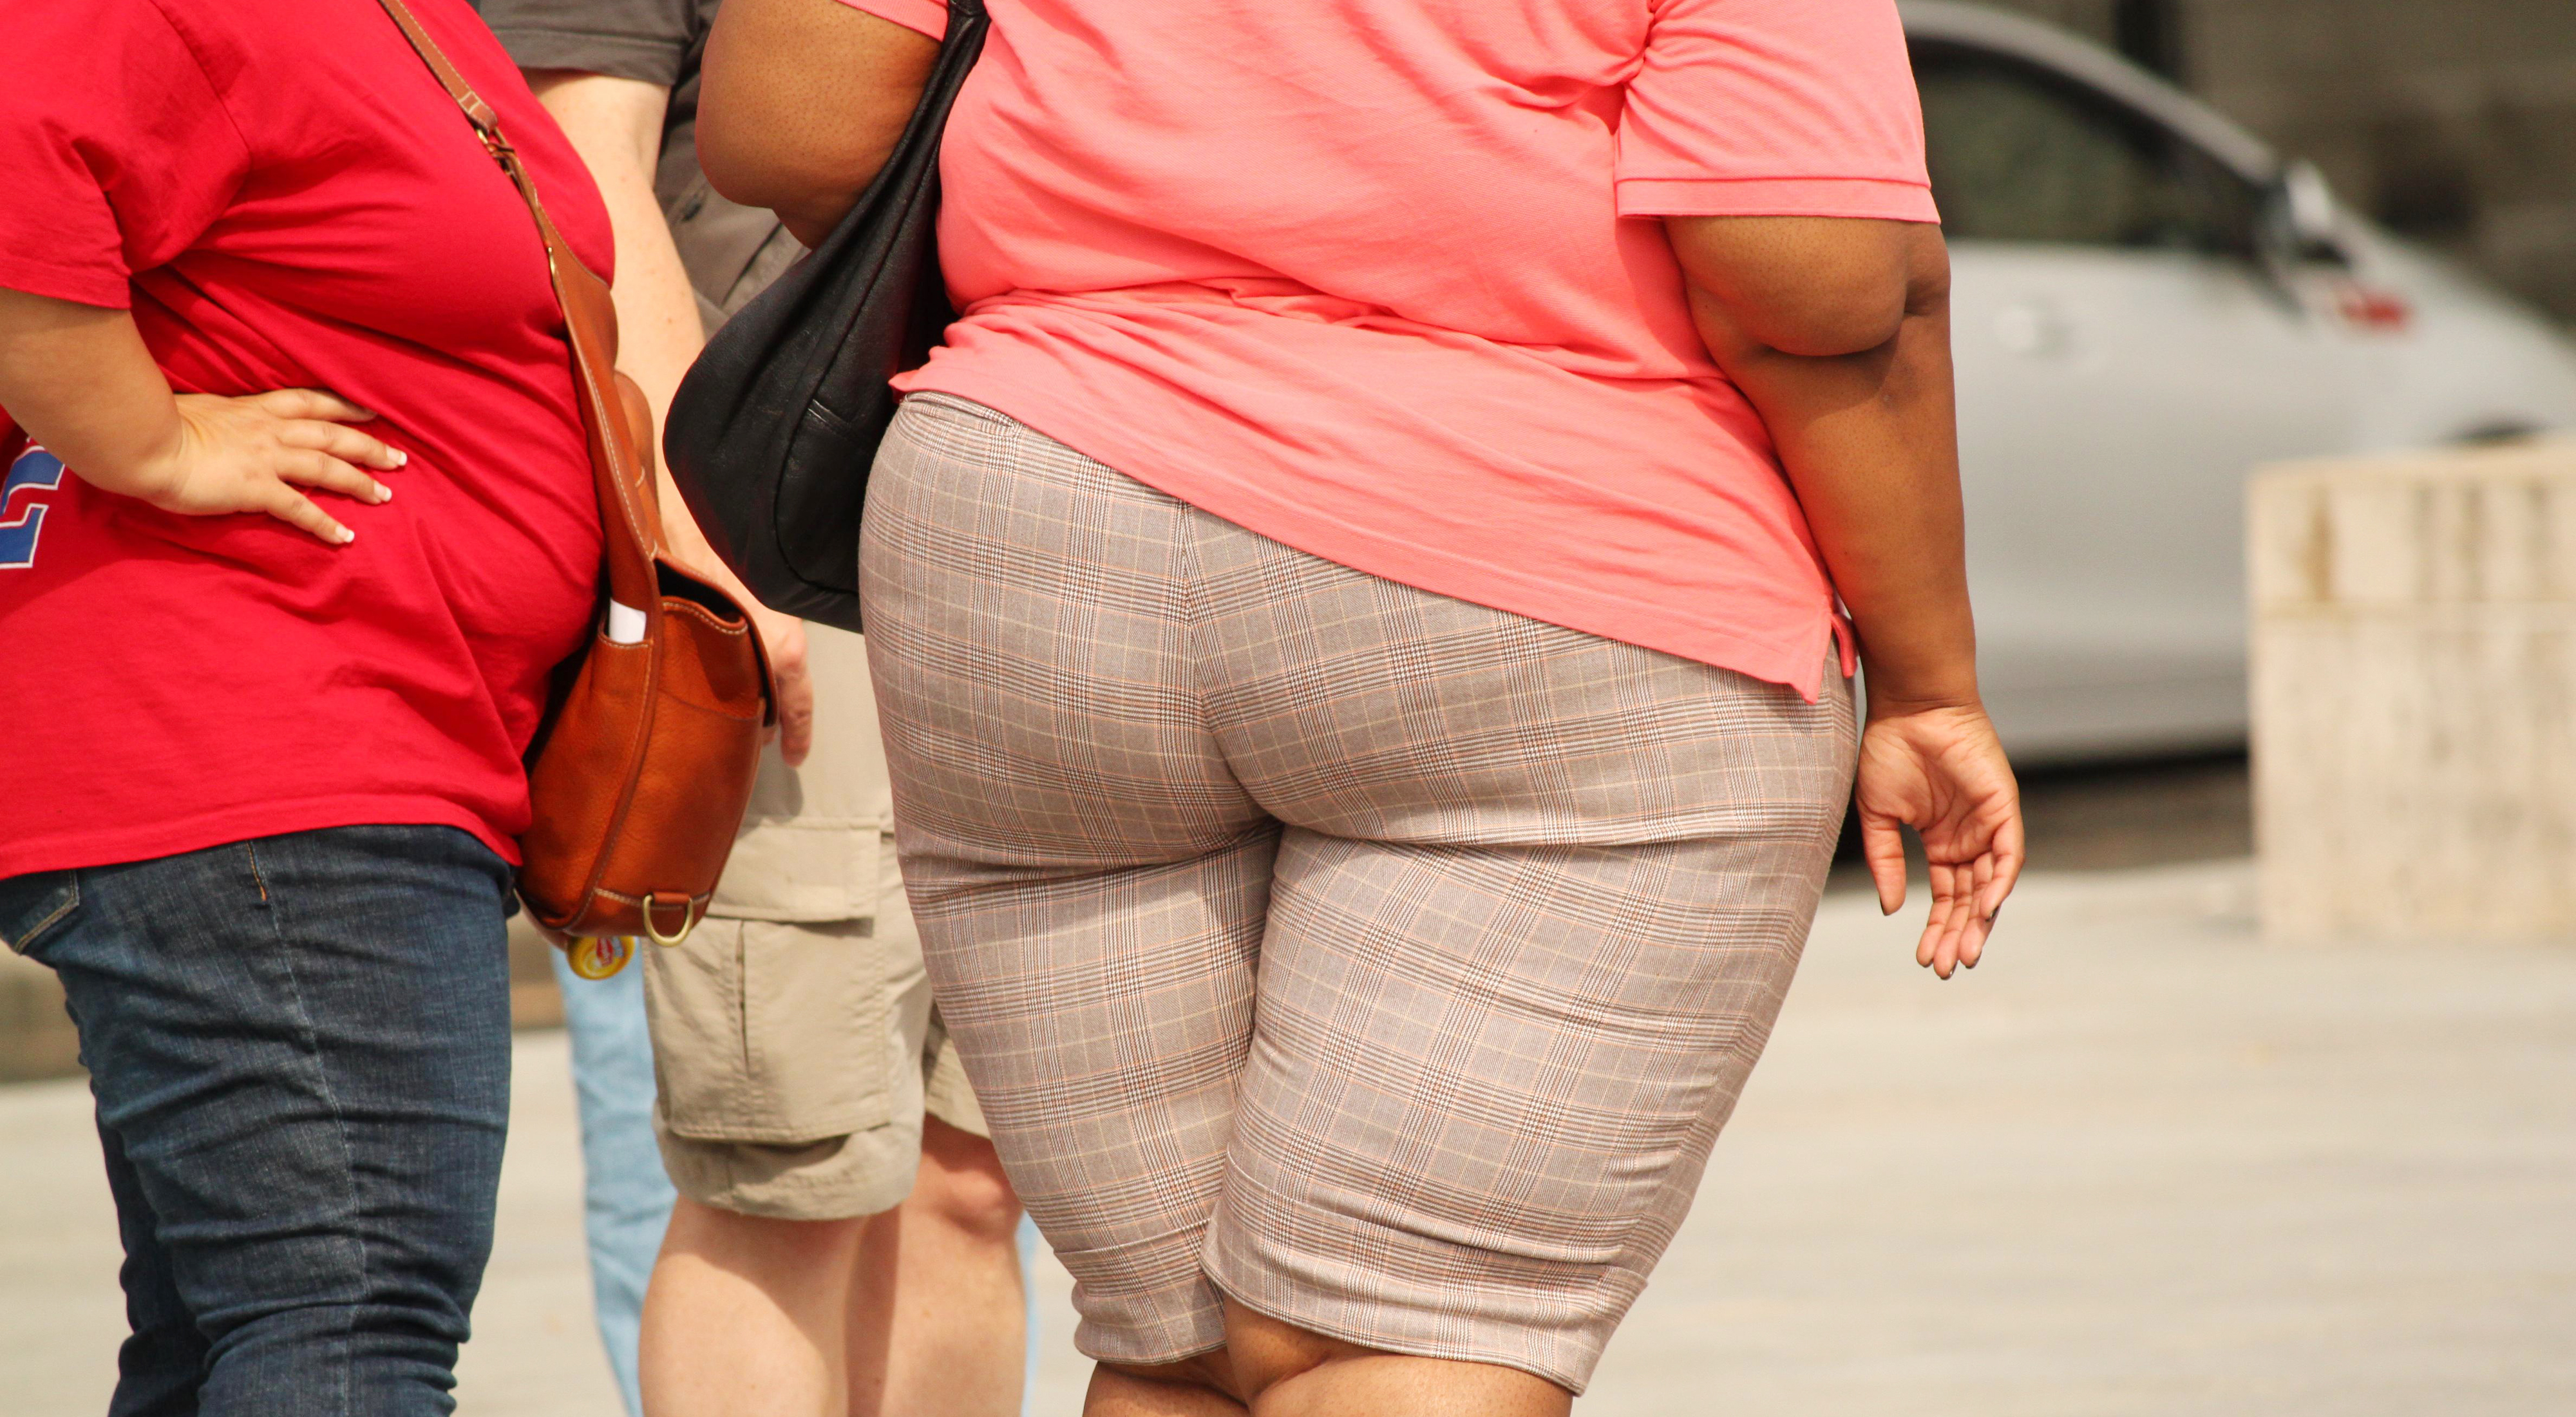 Cosa succede al corpo in caso di obesità?